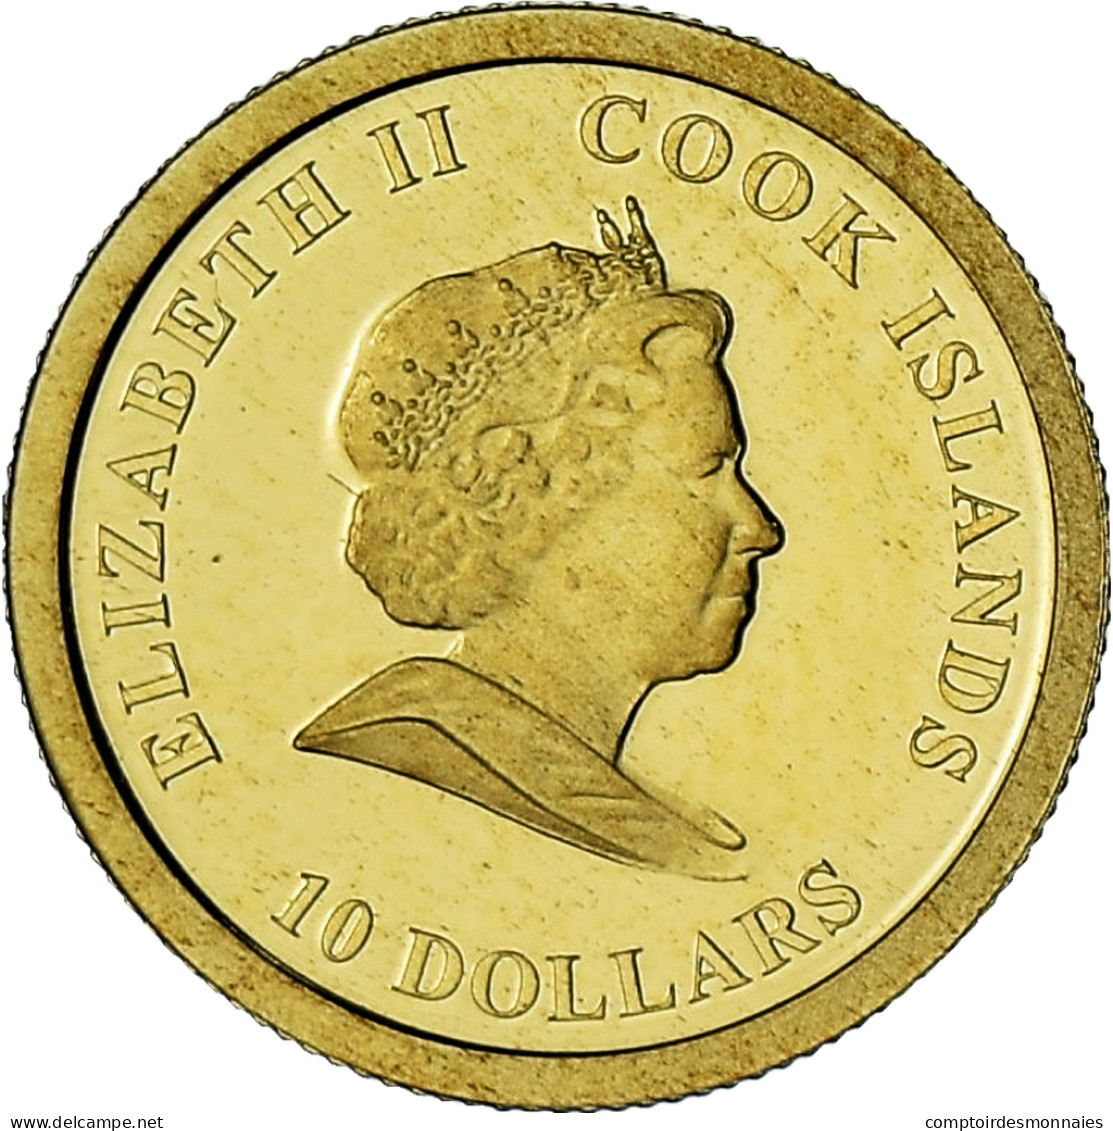 Îles Cook, Elizabeth II, James Cook, 10 Dollars, 2008, BE, FDC, Or - Islas Cook